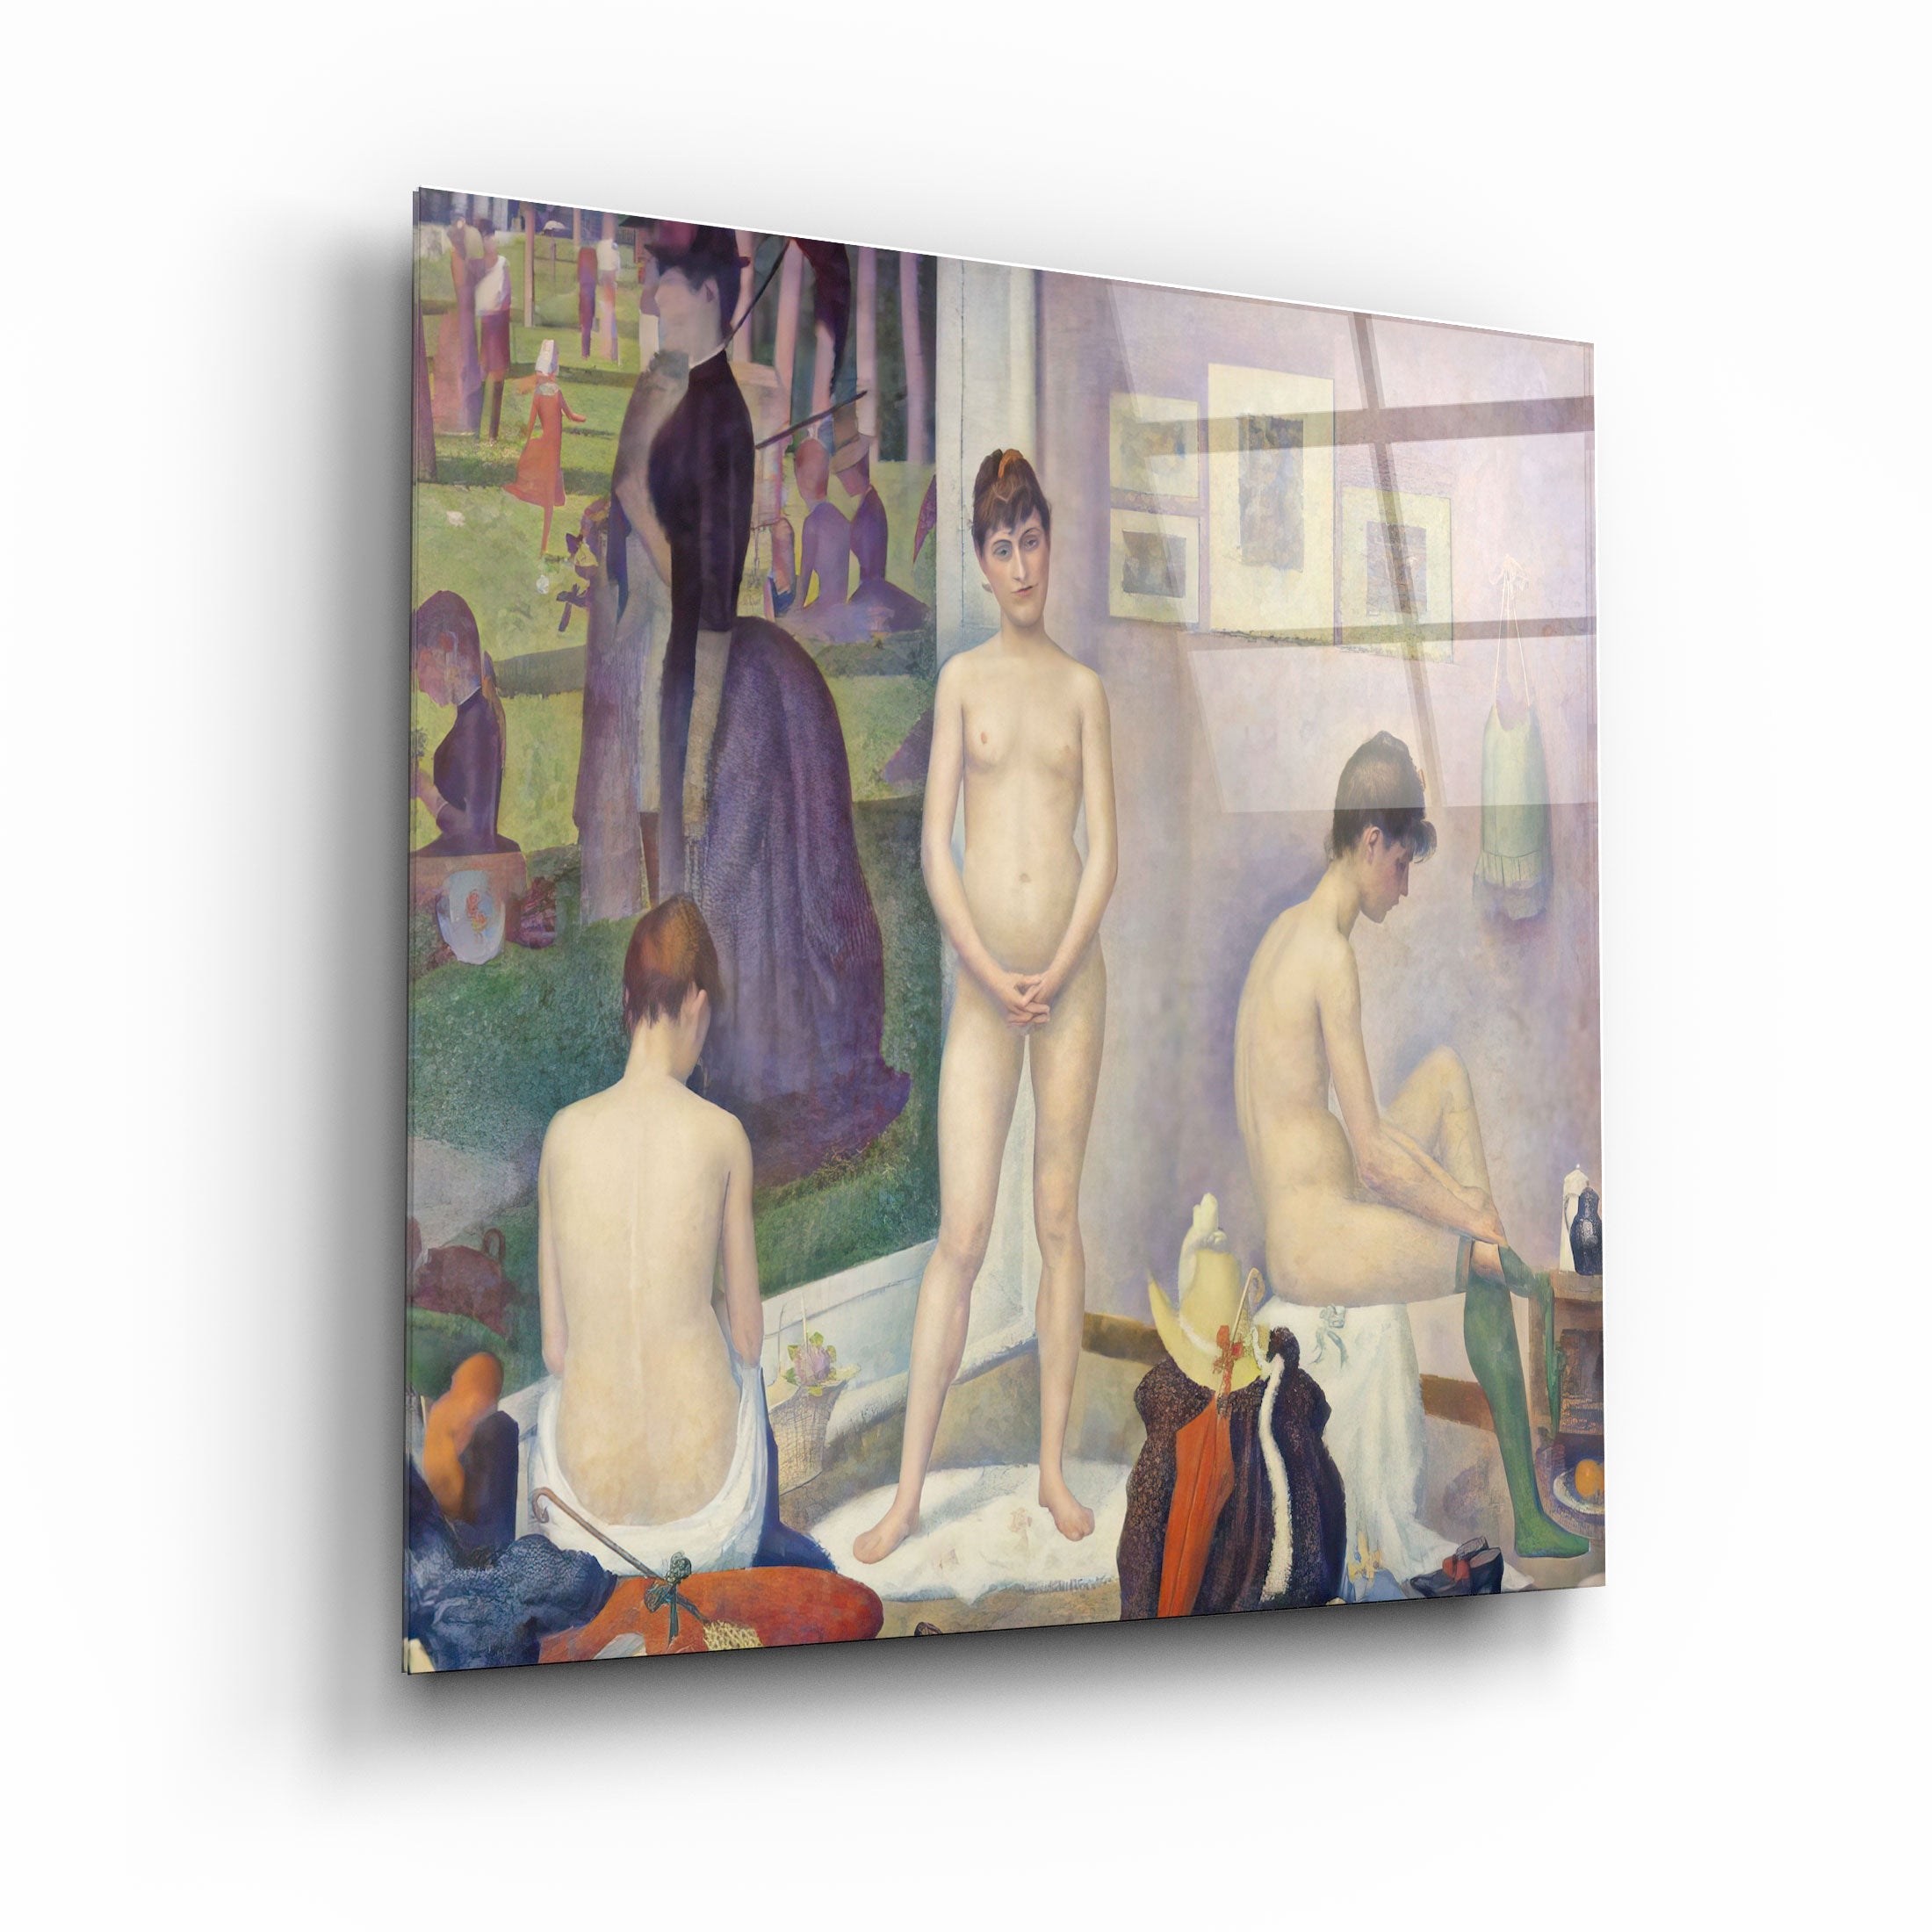 .."Modèles (Poseuses) (vers 1886-1888) de Georges Seurat". Art mural en verre